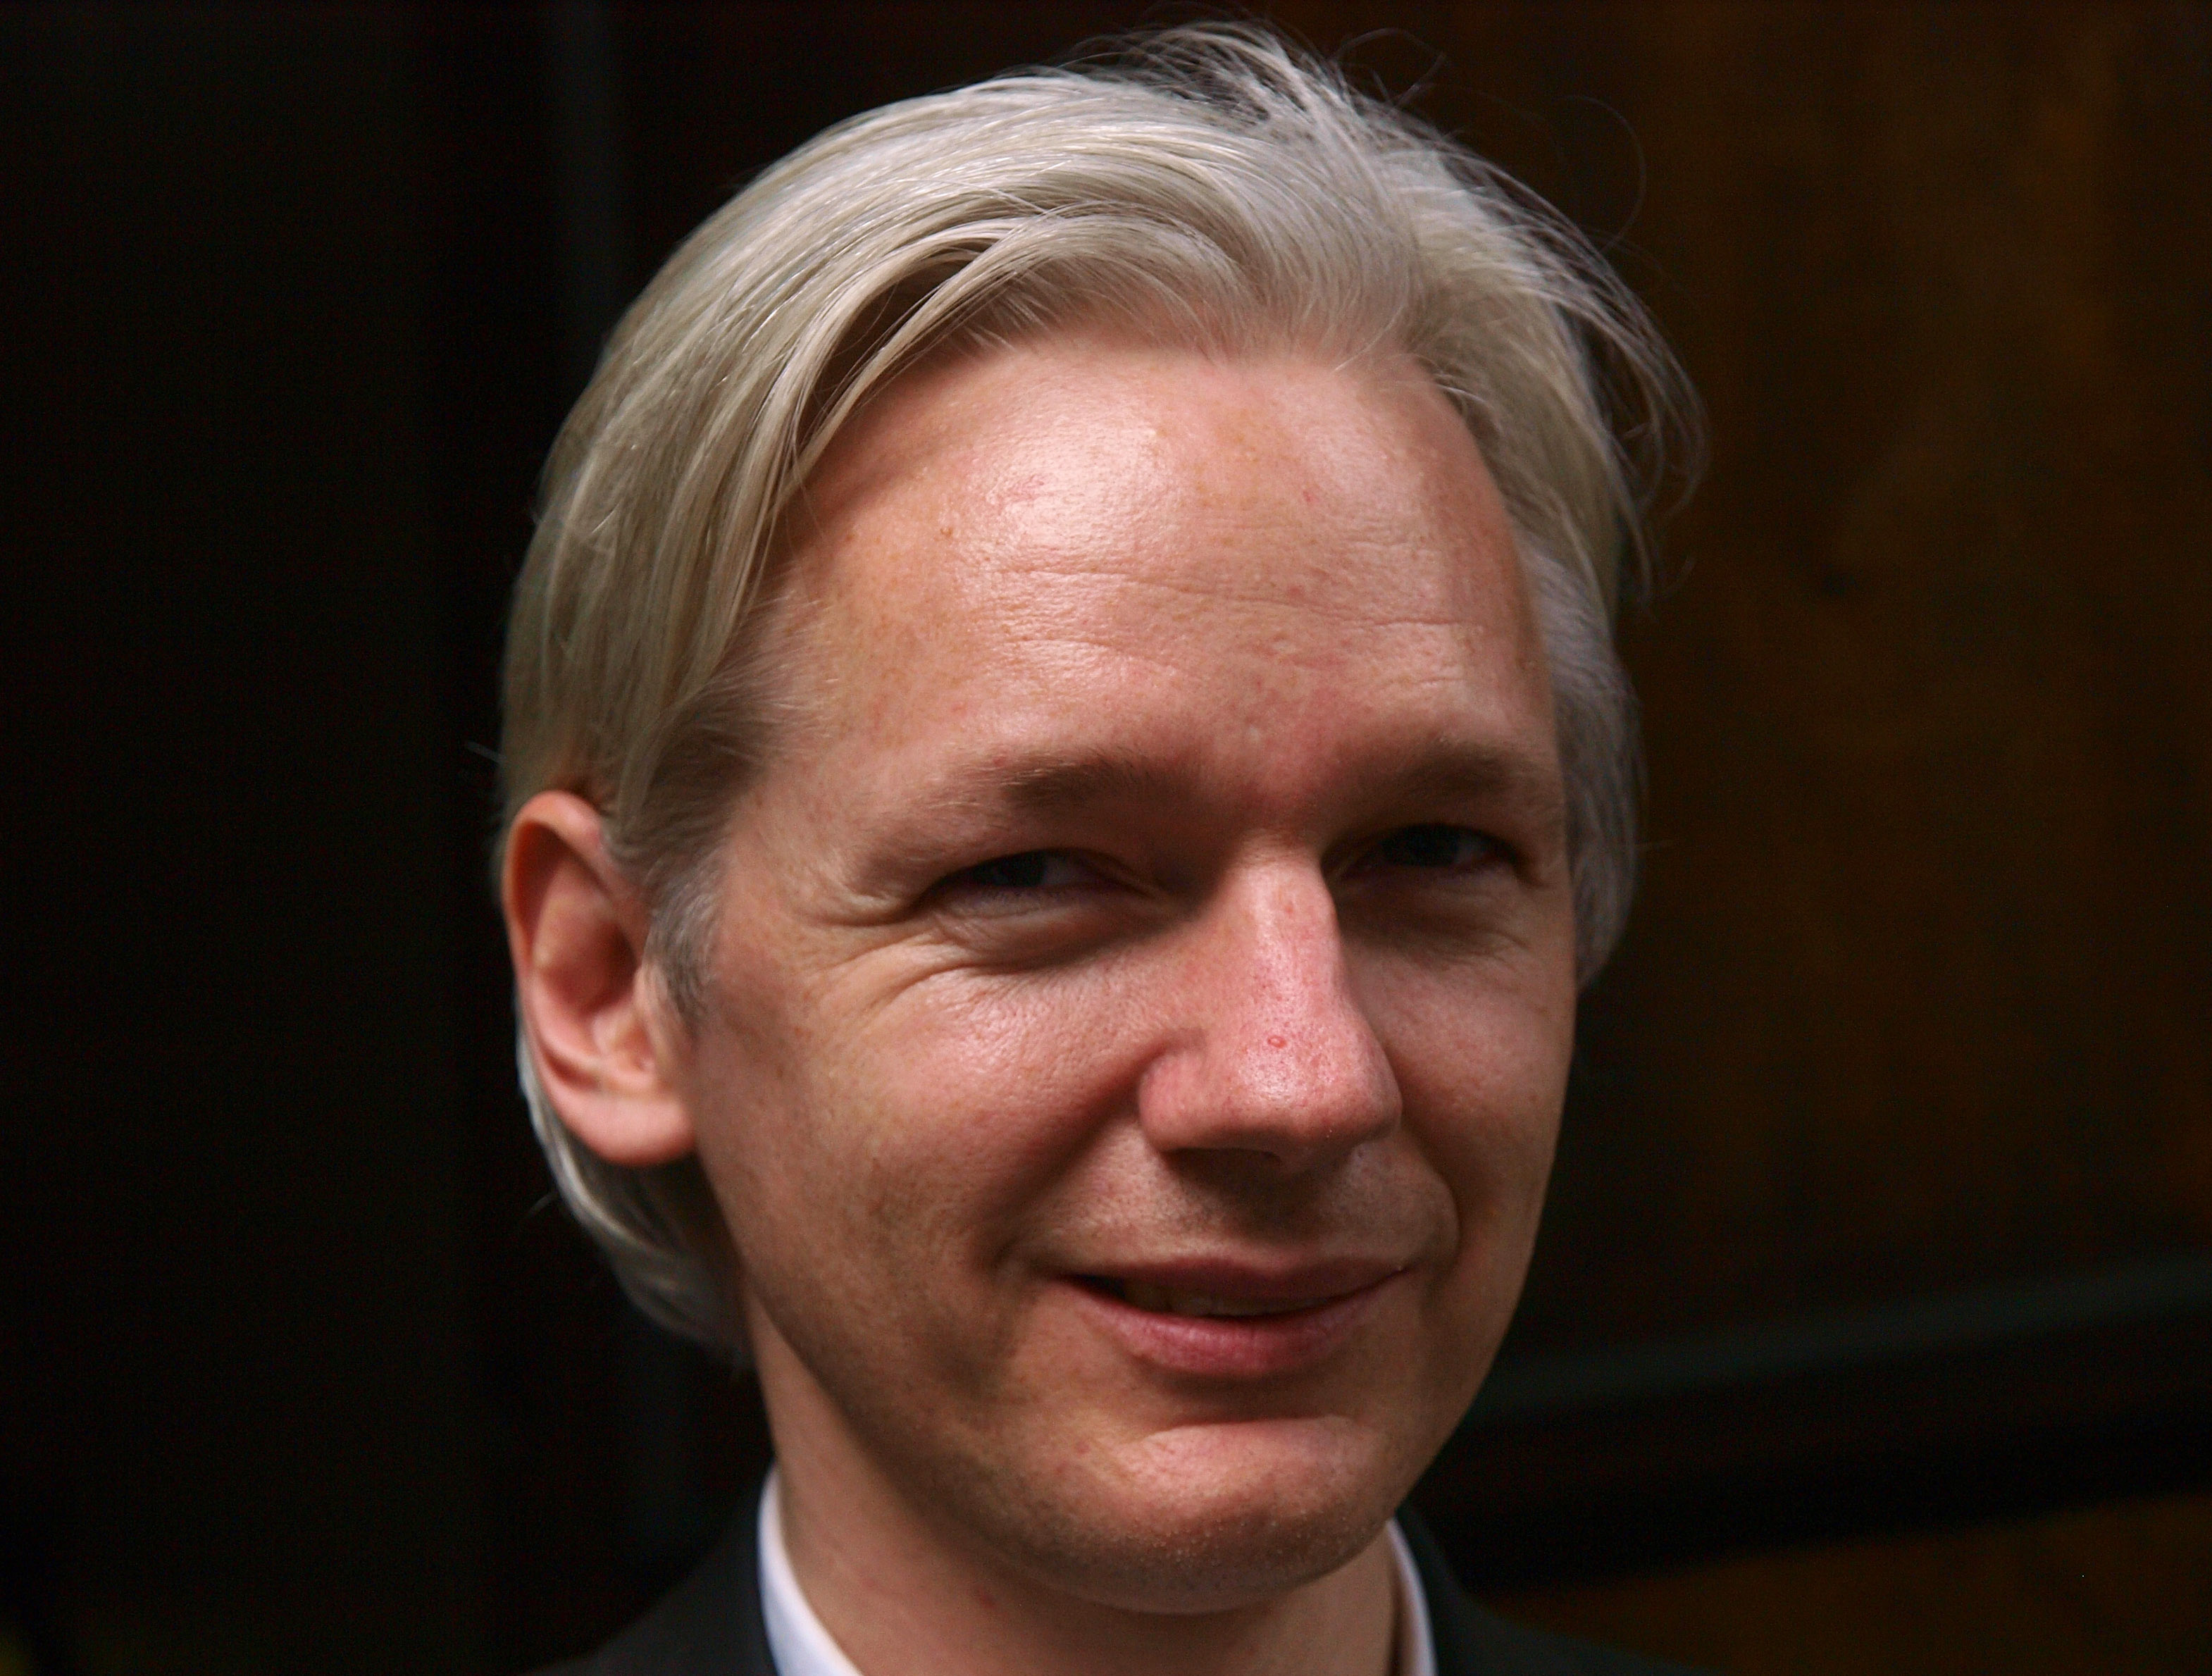 Wikileaks, Julian Assange